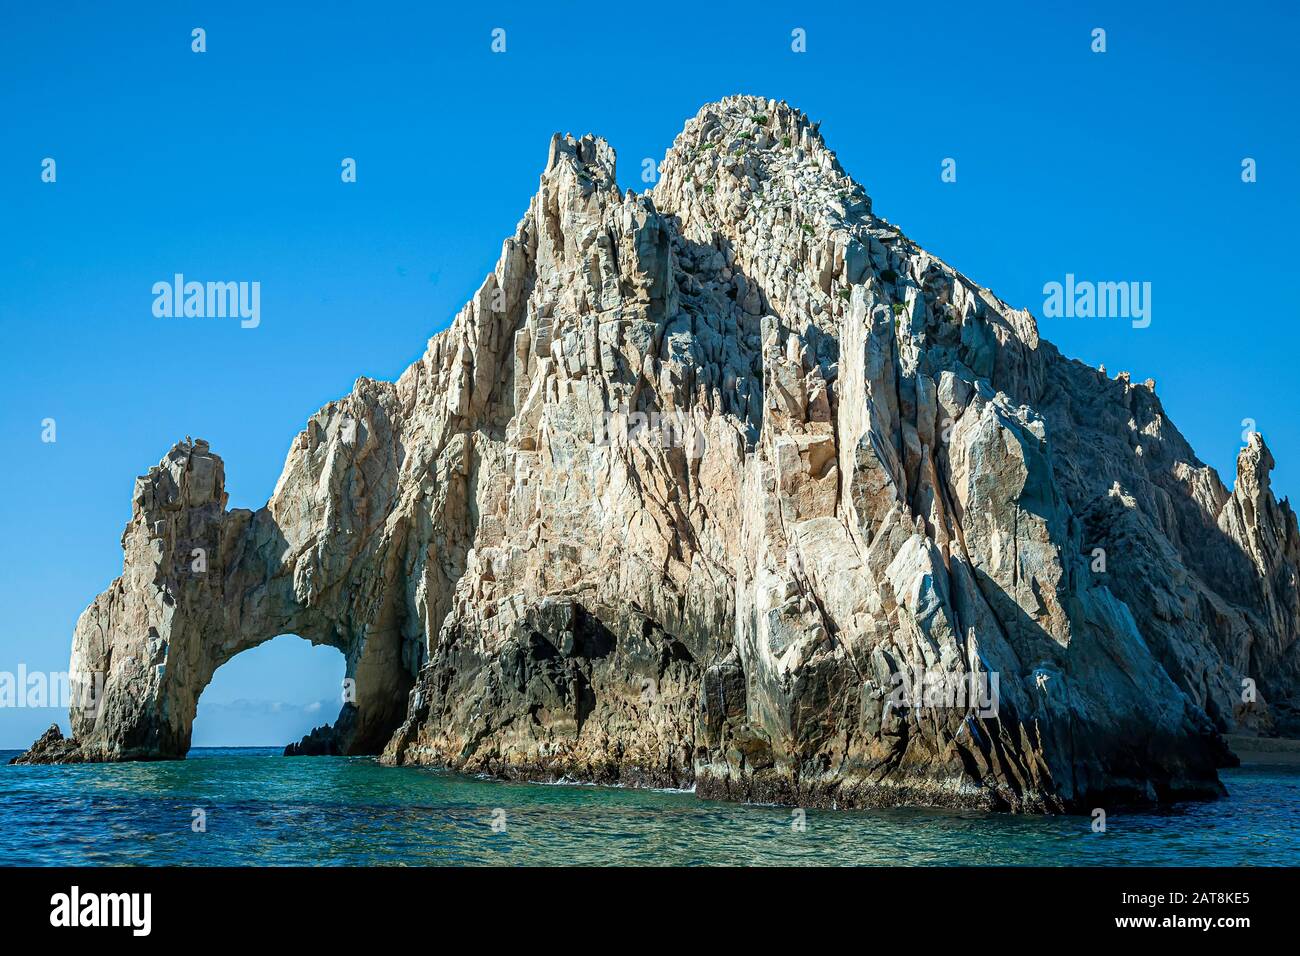 El Arco (l'arche), la formation de granite près de Cabo San Lucas, Baja California Sur, Mexique Banque D'Images